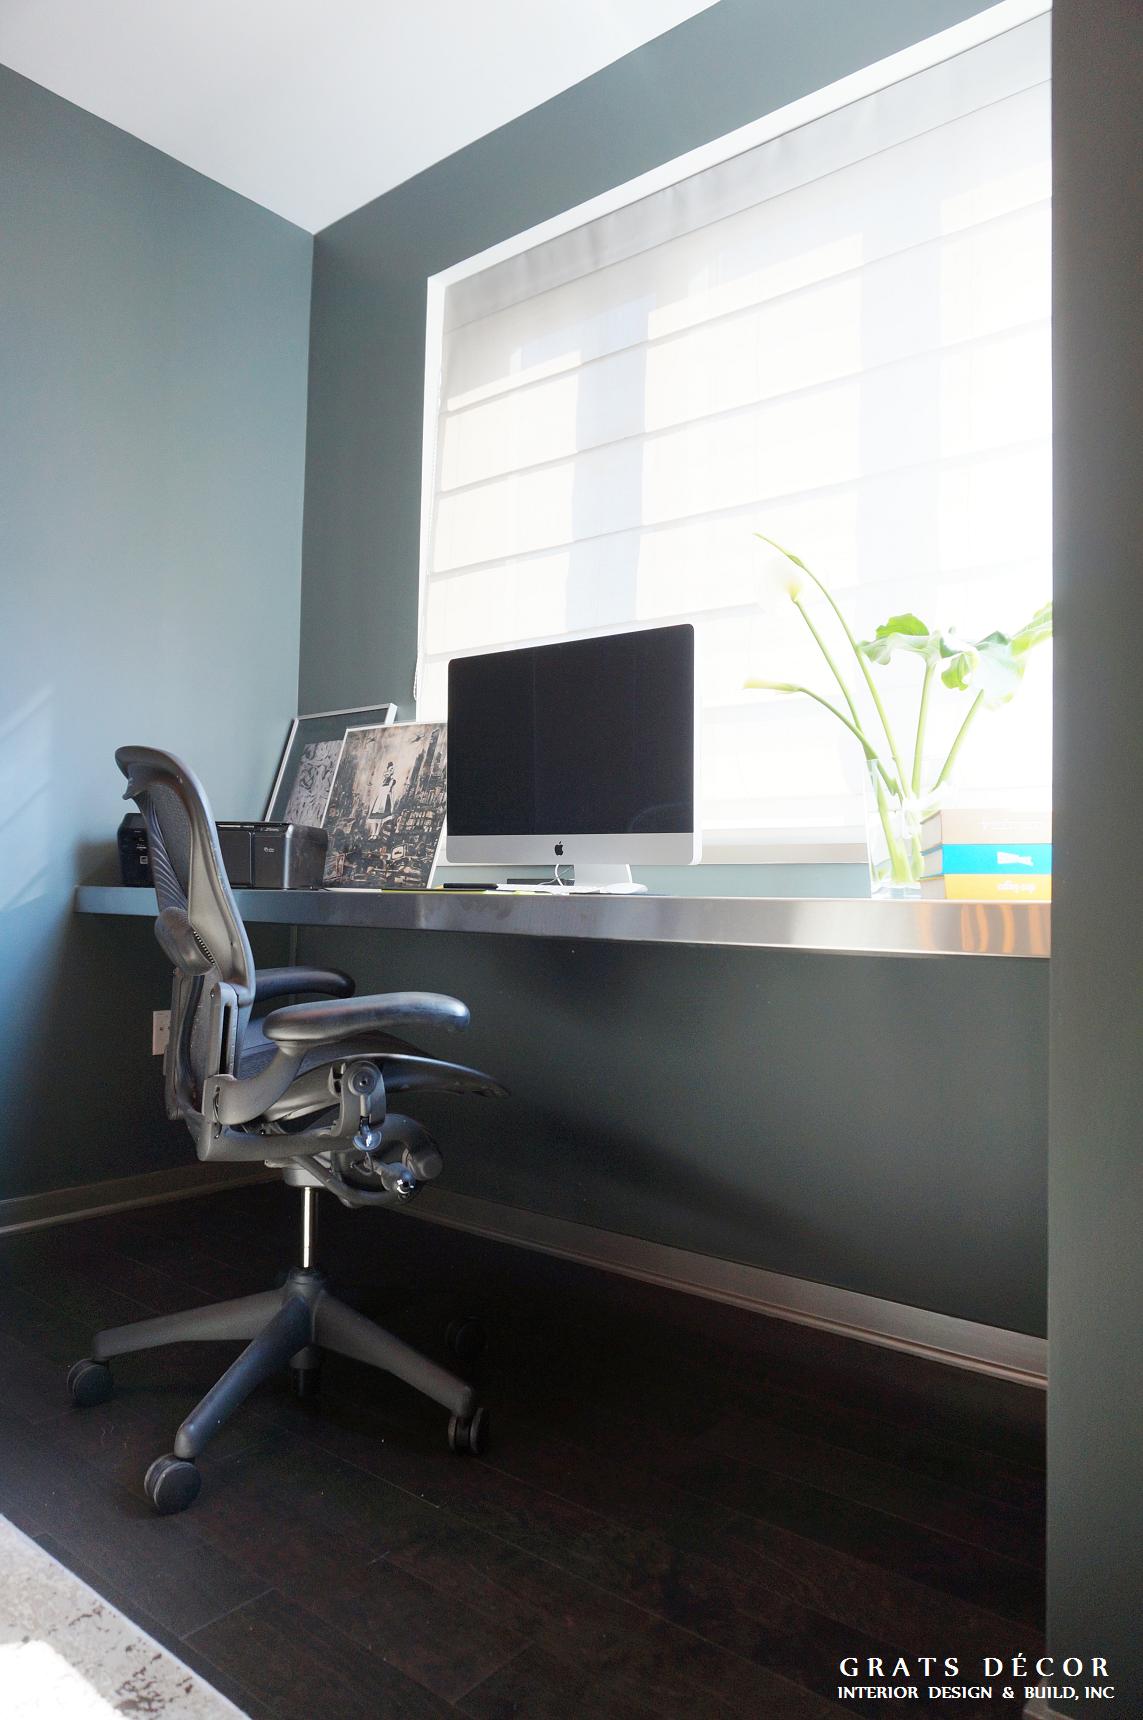 Office / Guest Room Remodel - Grats Decor Interior Design & Build Inc.